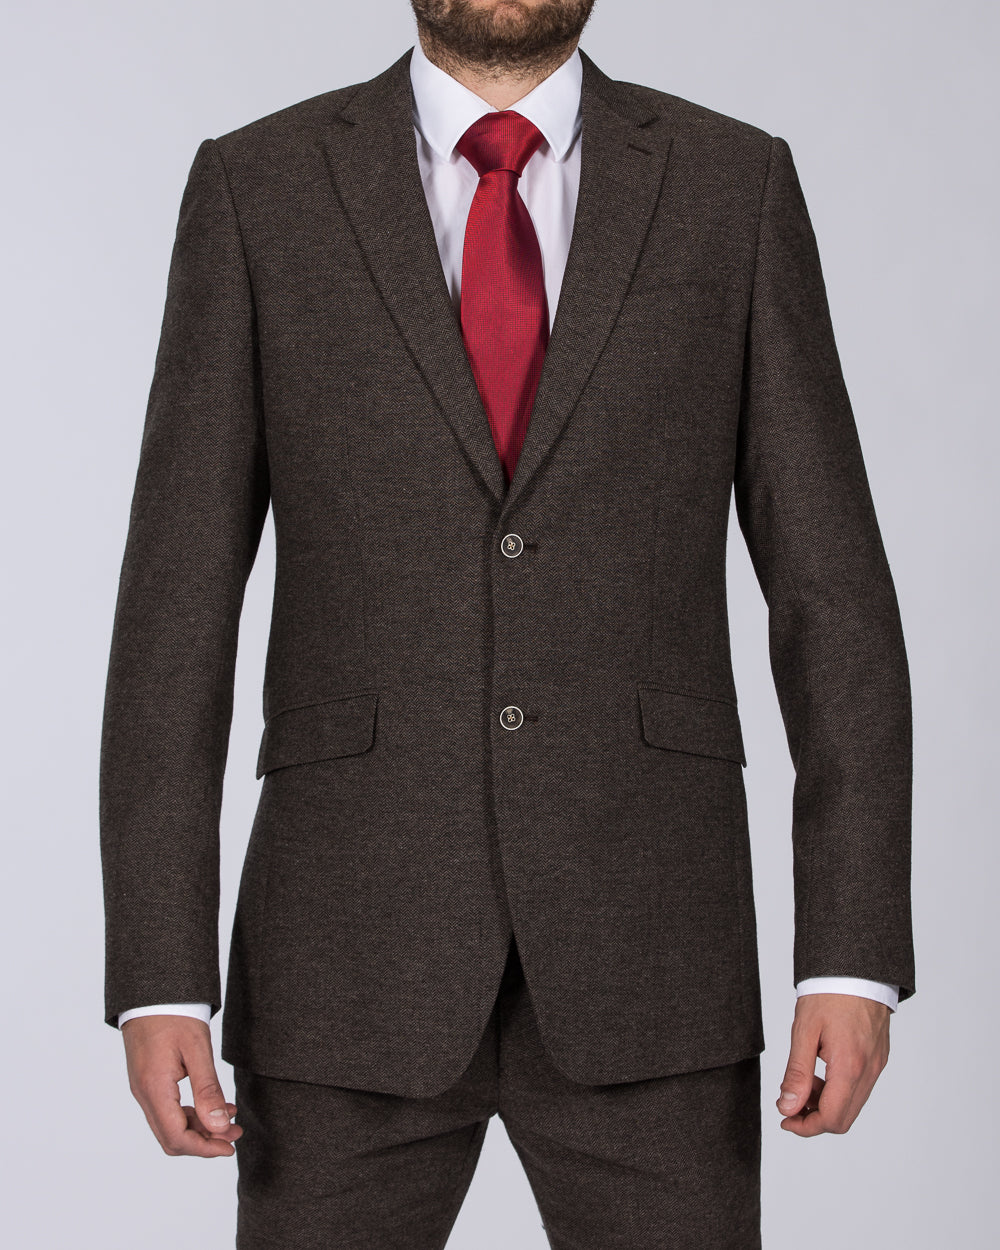 Skopes Jude Skinny Fit Tall Tweed Suit Jacket (brown herringbone)